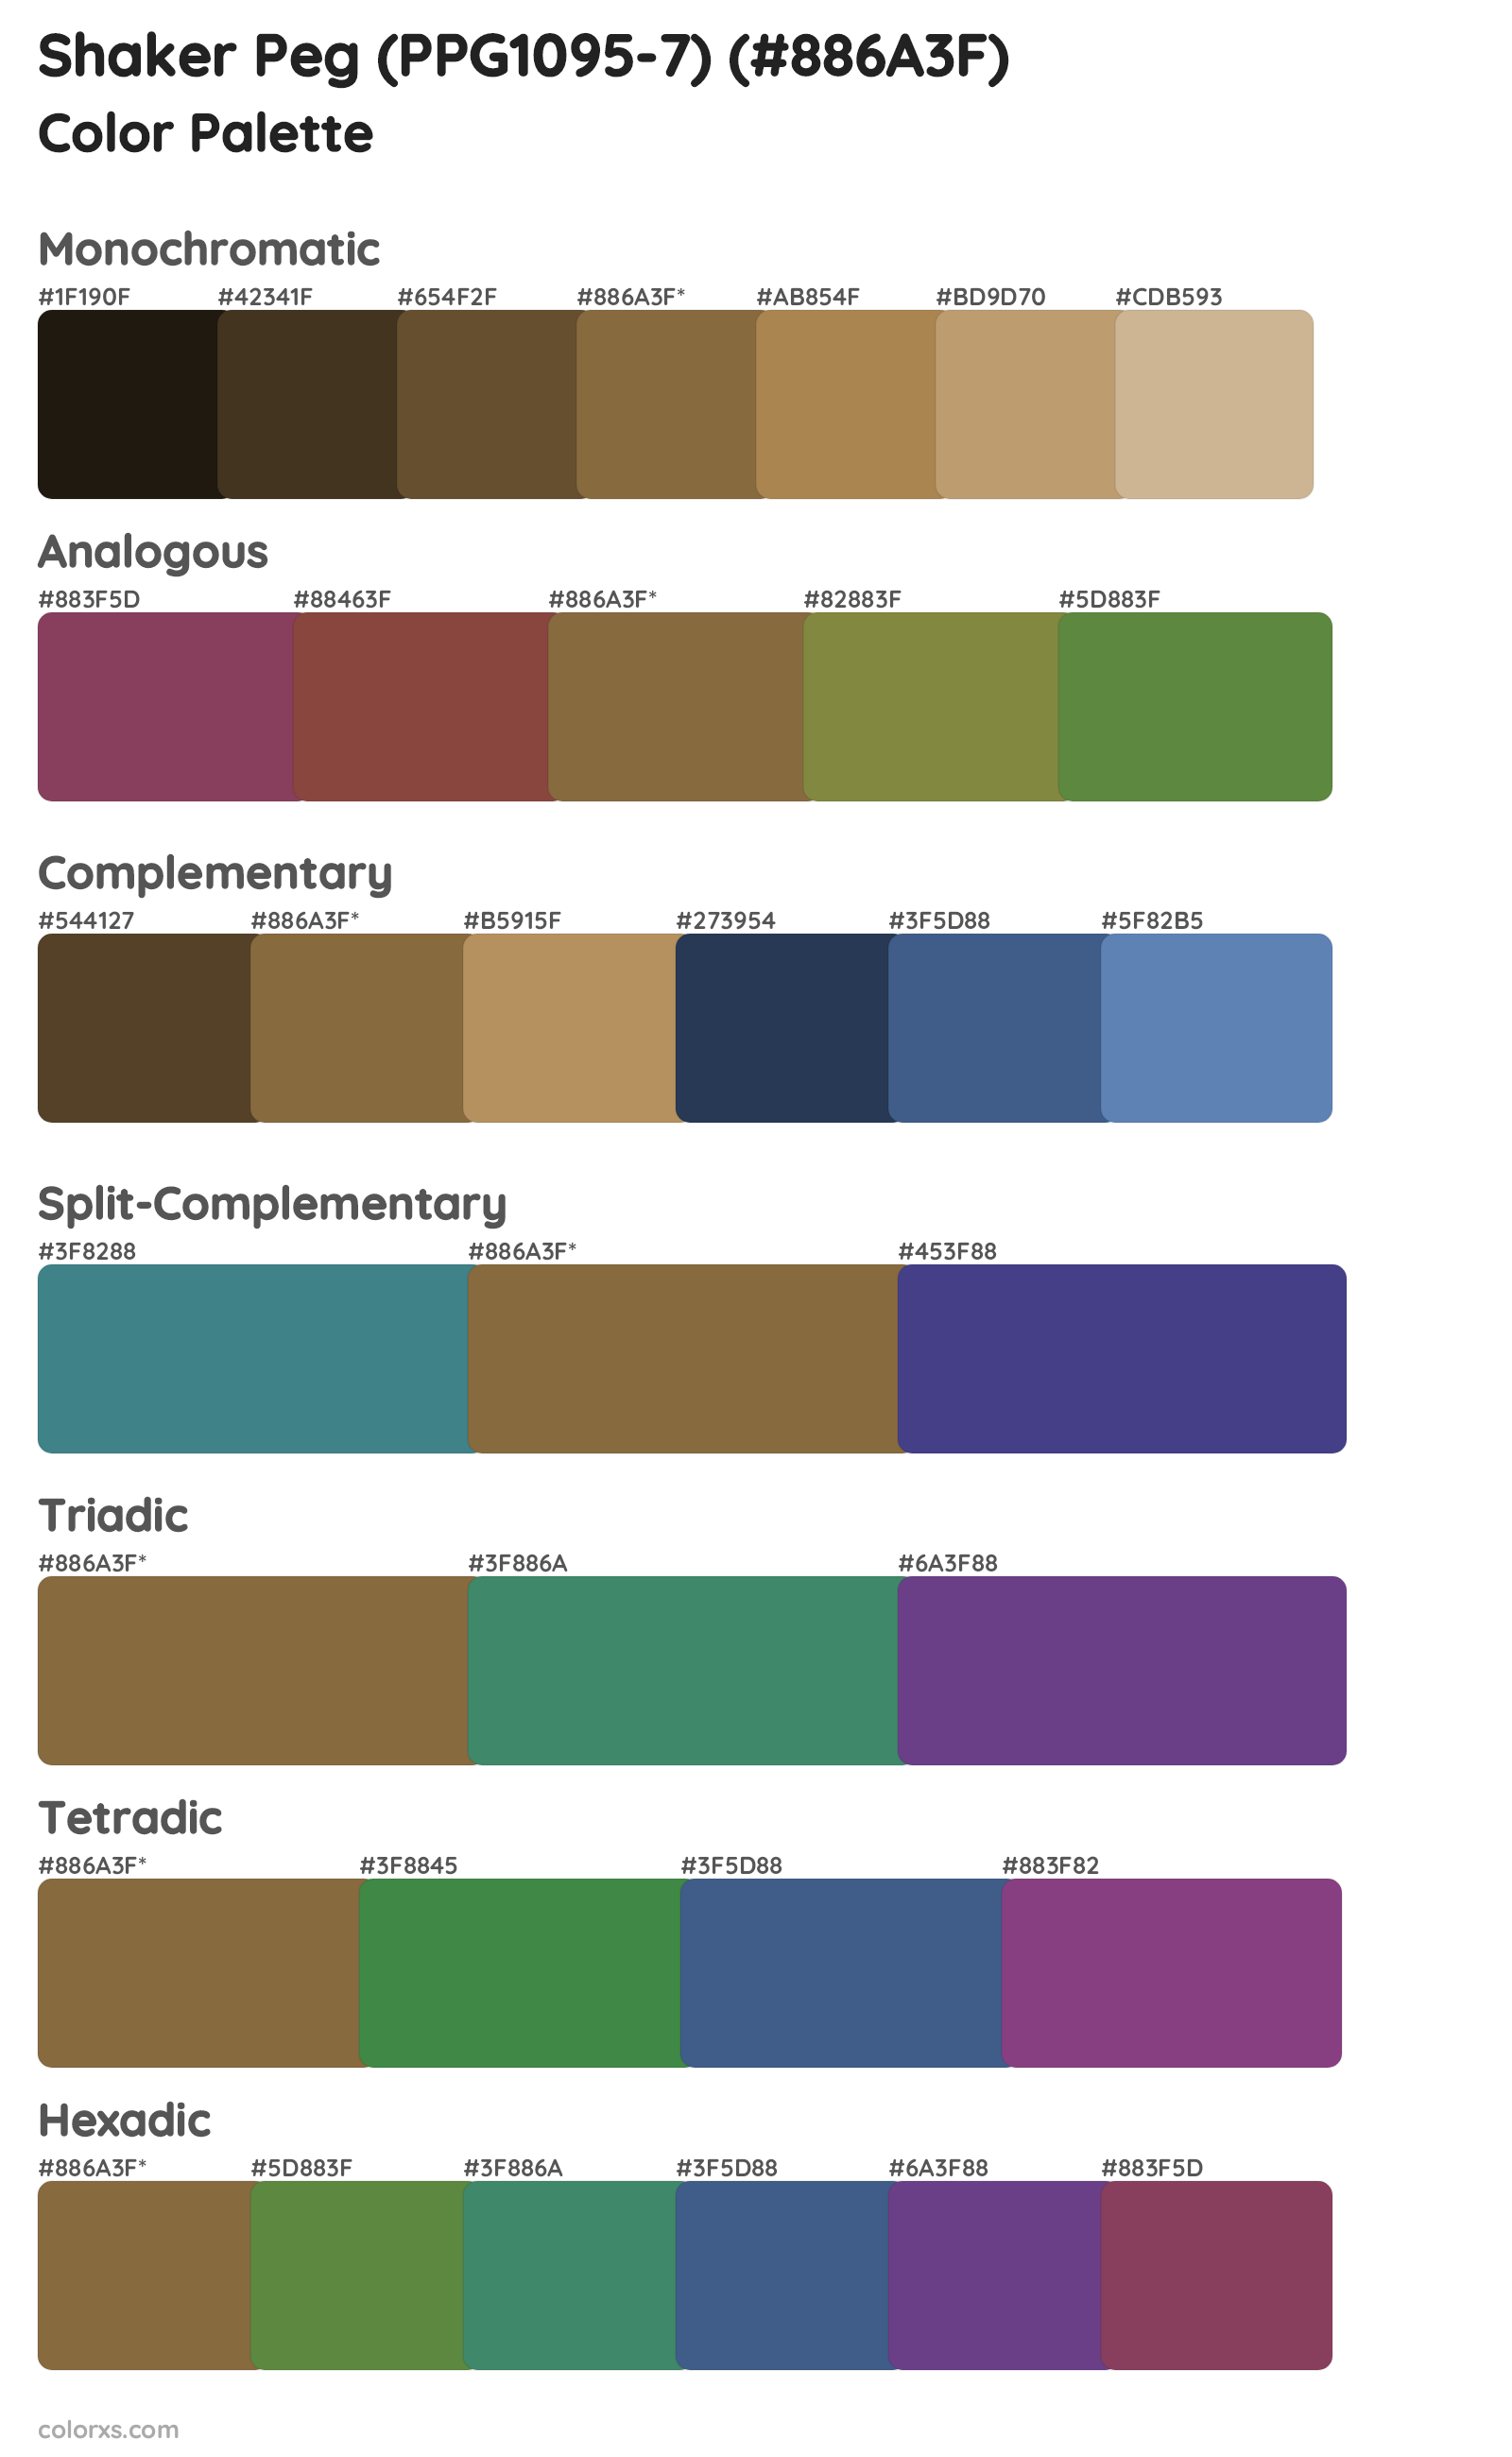 Shaker Peg (PPG1095-7) Color Scheme Palettes